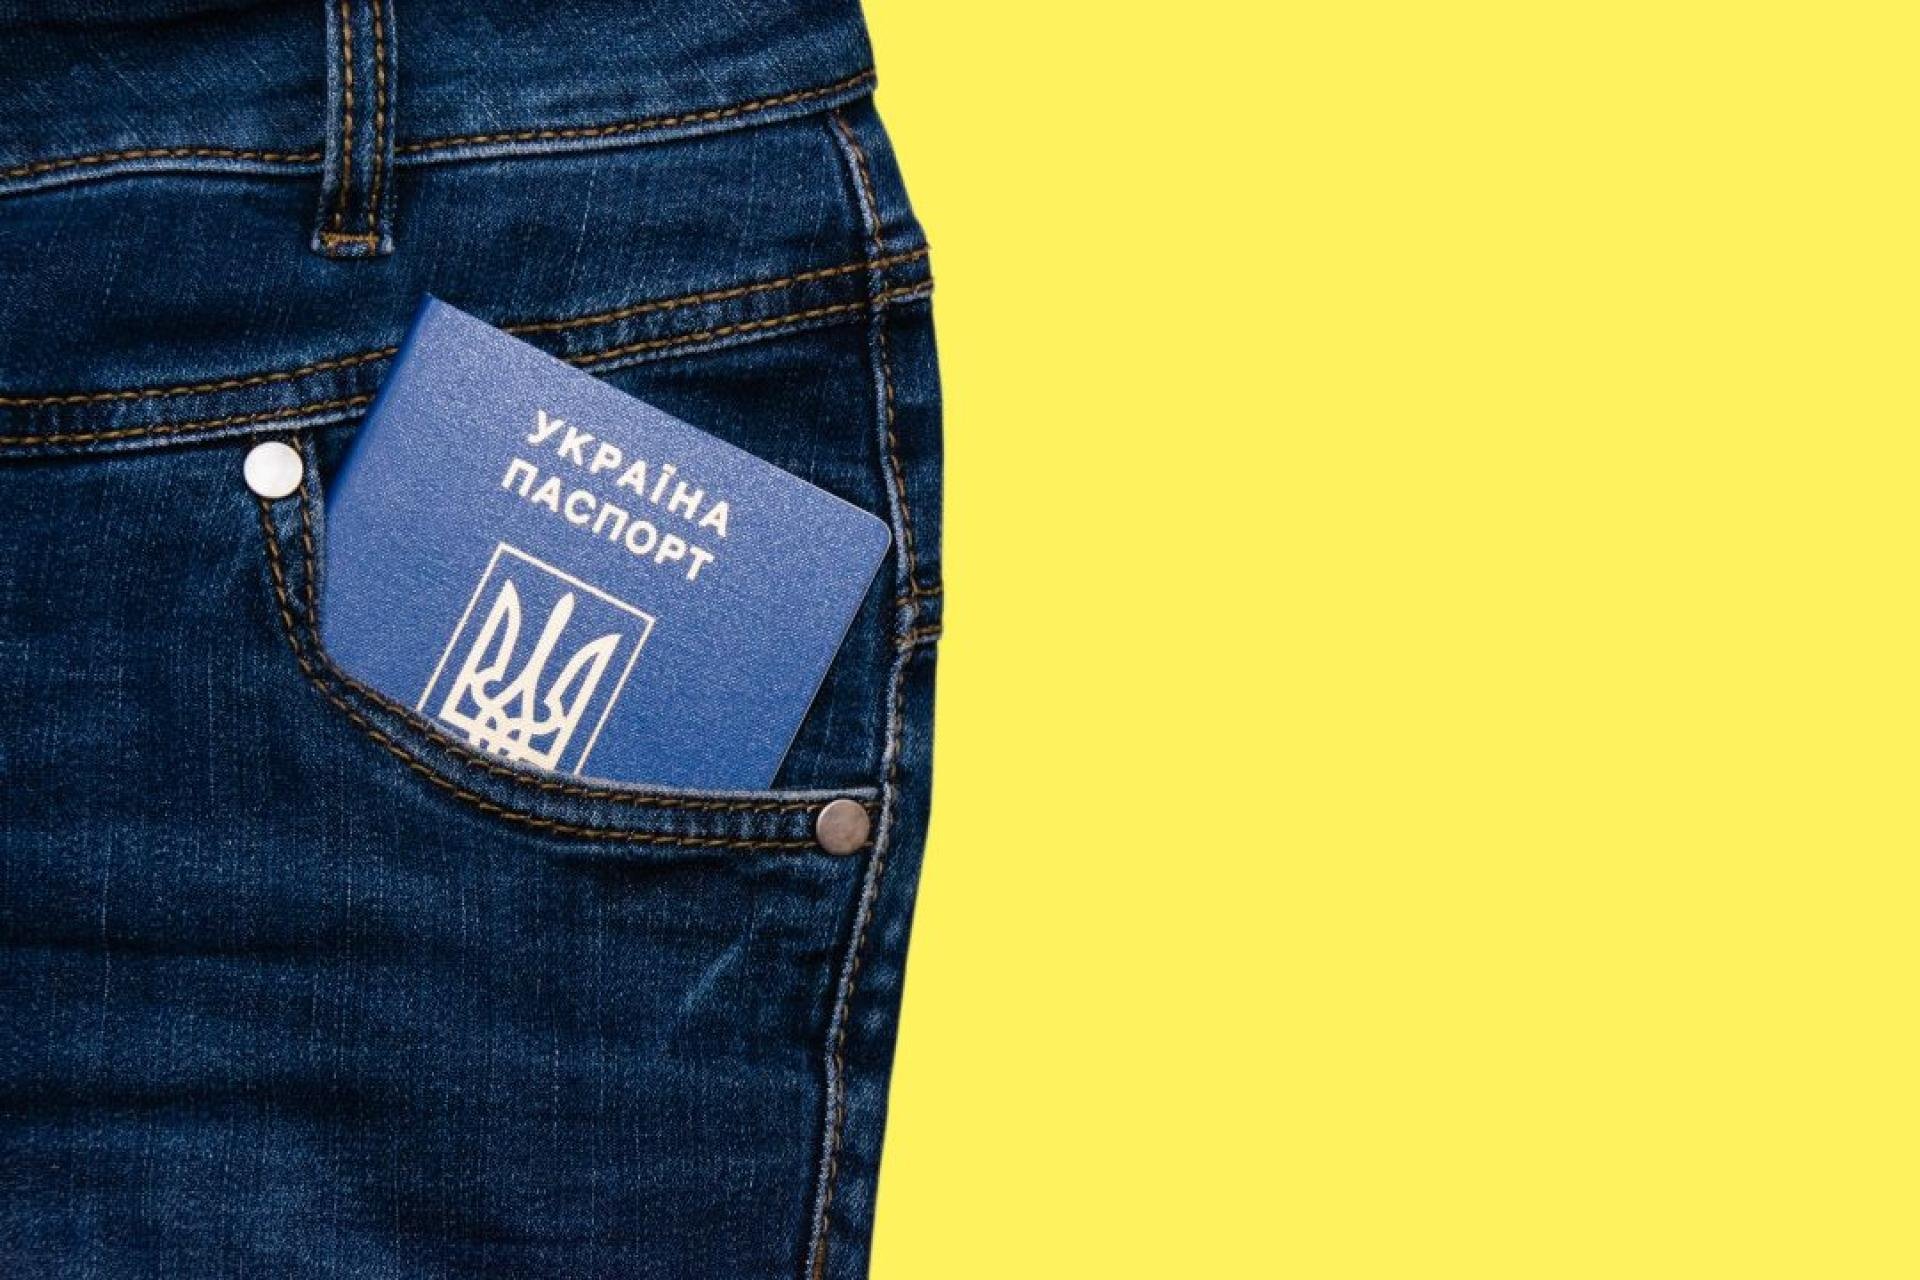 Spijkerbroek met in de zak een Oekraïens paspoort